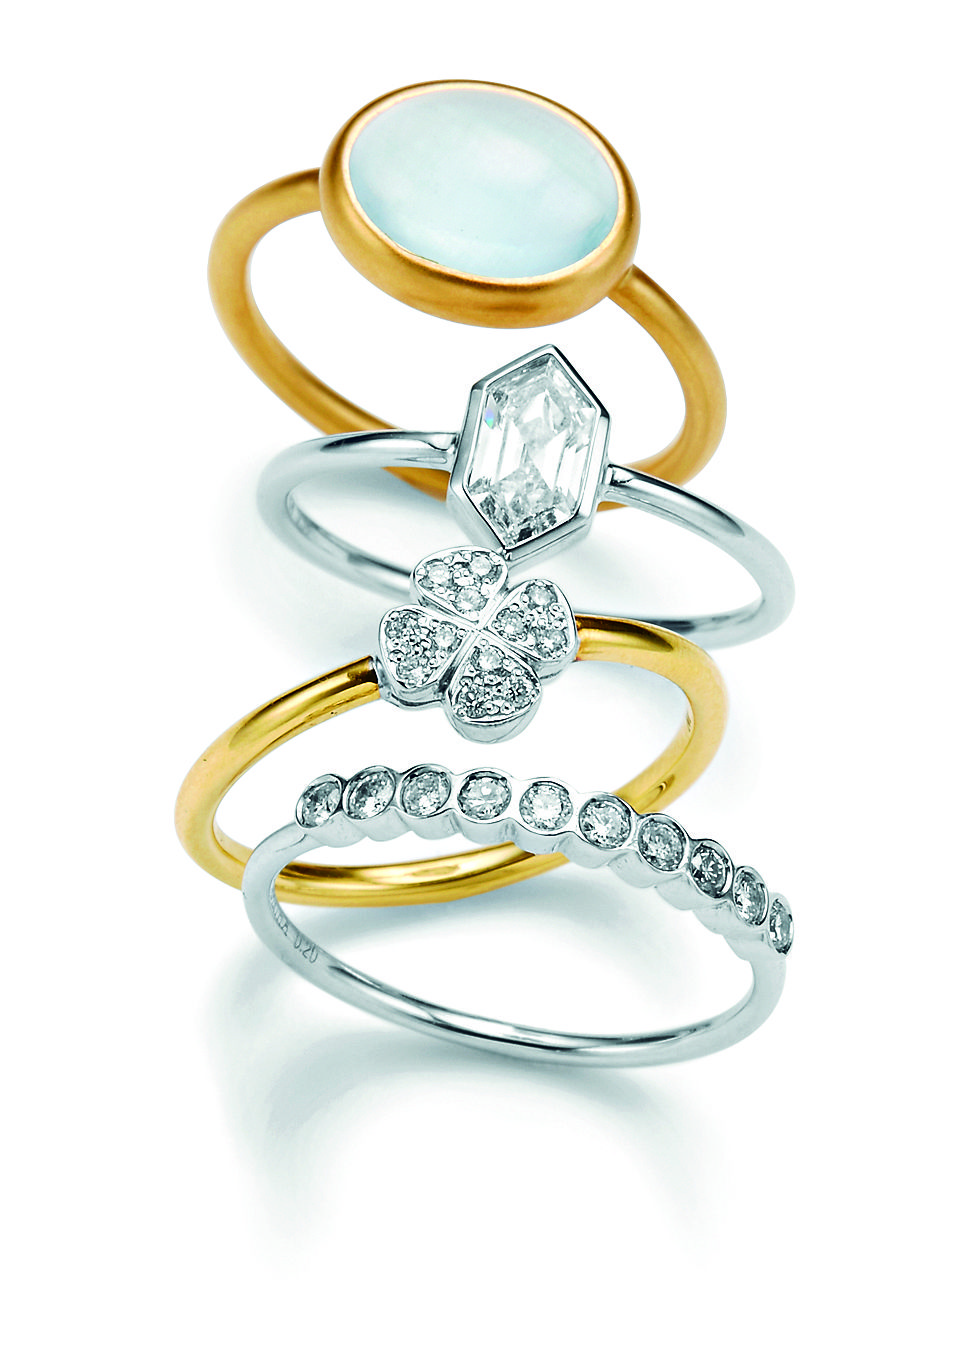 結婚指輪・婚約指輪がおしゃれな日本のジュエリーブランド12選 | ELLE 